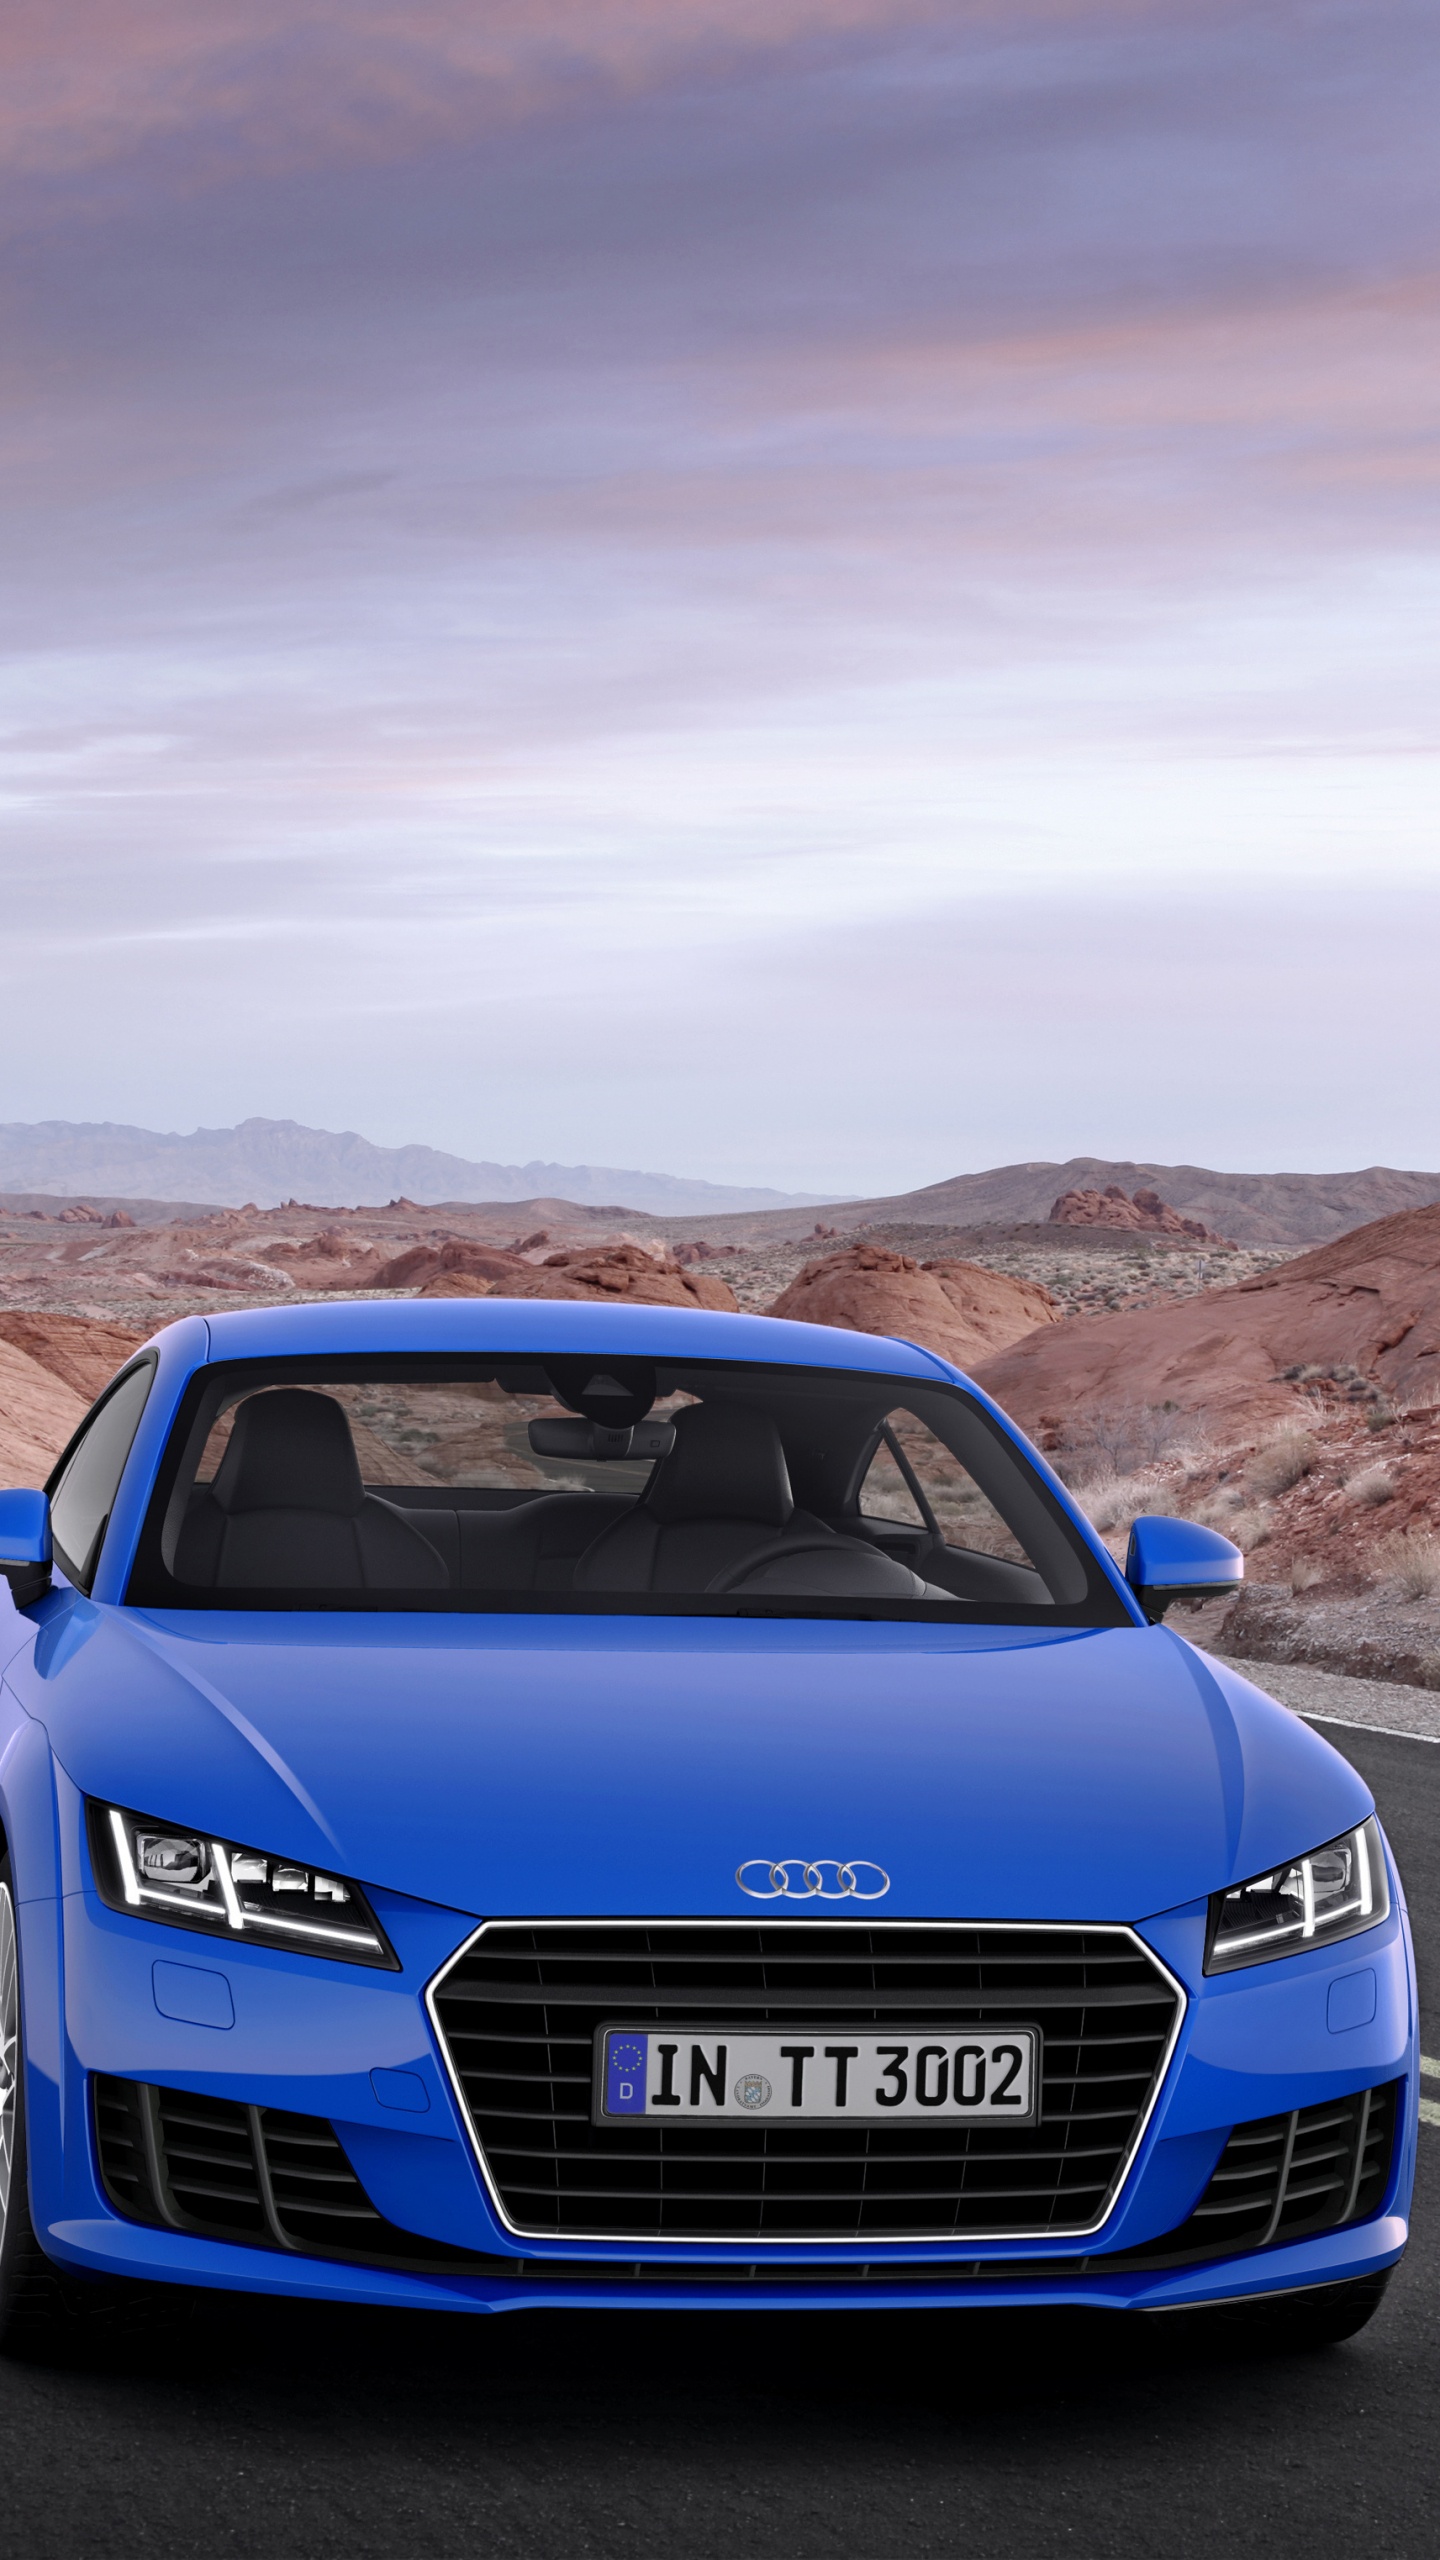 Bleu Audi a 4 Sur Route Pendant la Journée. Wallpaper in 1440x2560 Resolution